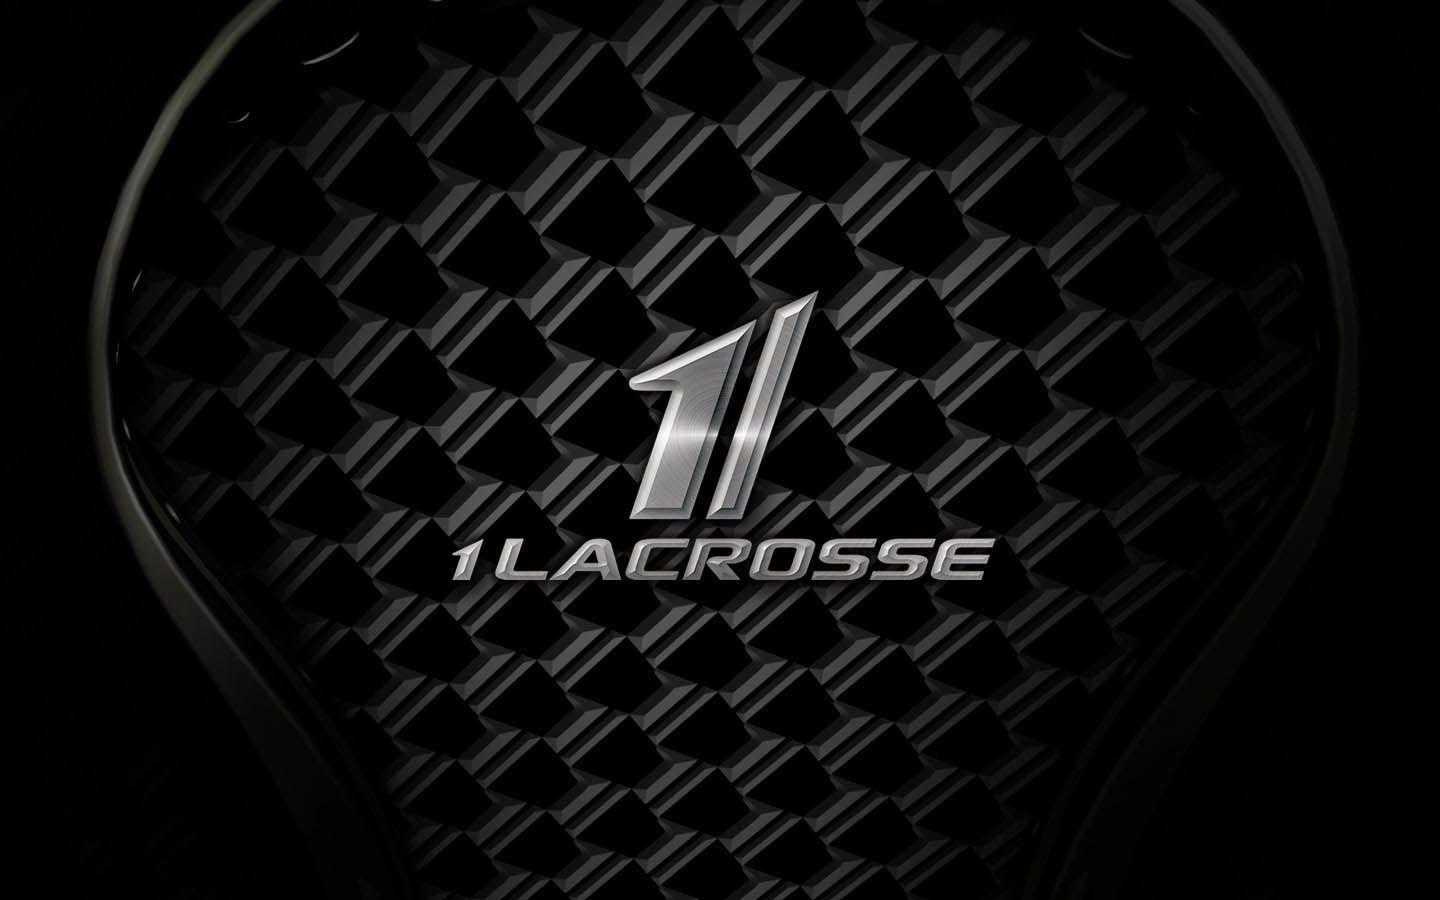 Lacrosse Wallpaper. Lacrosse